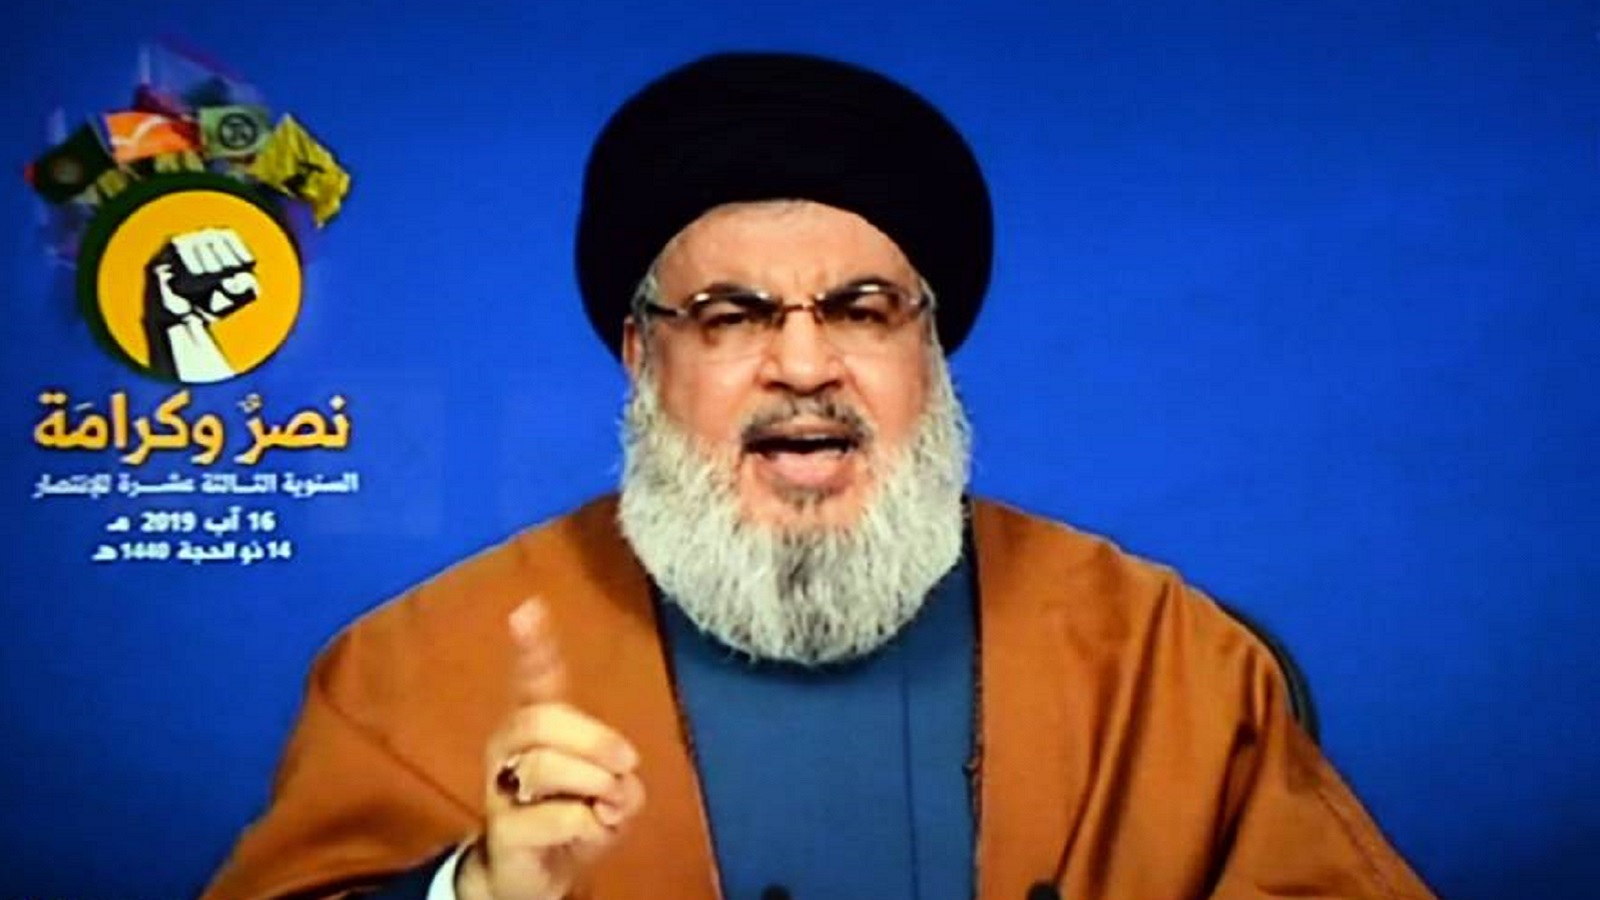 حلفاء "حزب الله" غاضبون: "النصر الملون" ناقص